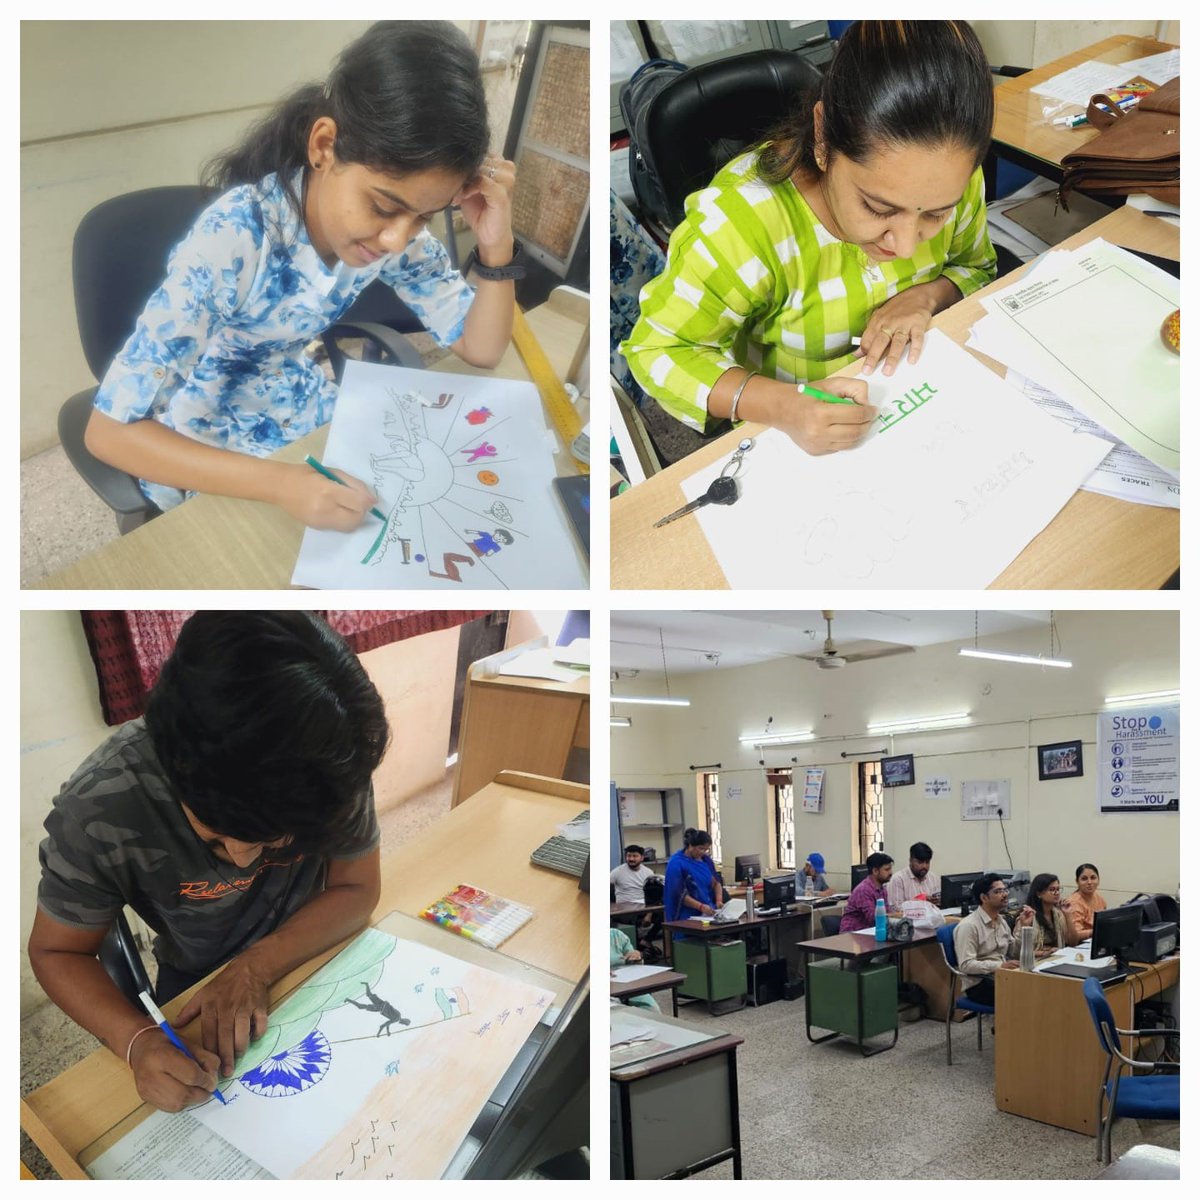 भा.  खा.  नि . मण्डल कार्यालय इंदौर मे पेंटिंग  प्रतियोगिता आयोजित की गयी ,आयोजन के दौरान उपस्थित अधिकारी एवं कर्मचारी गण |
@FCI_India
@FciWest
@fcirobhopal